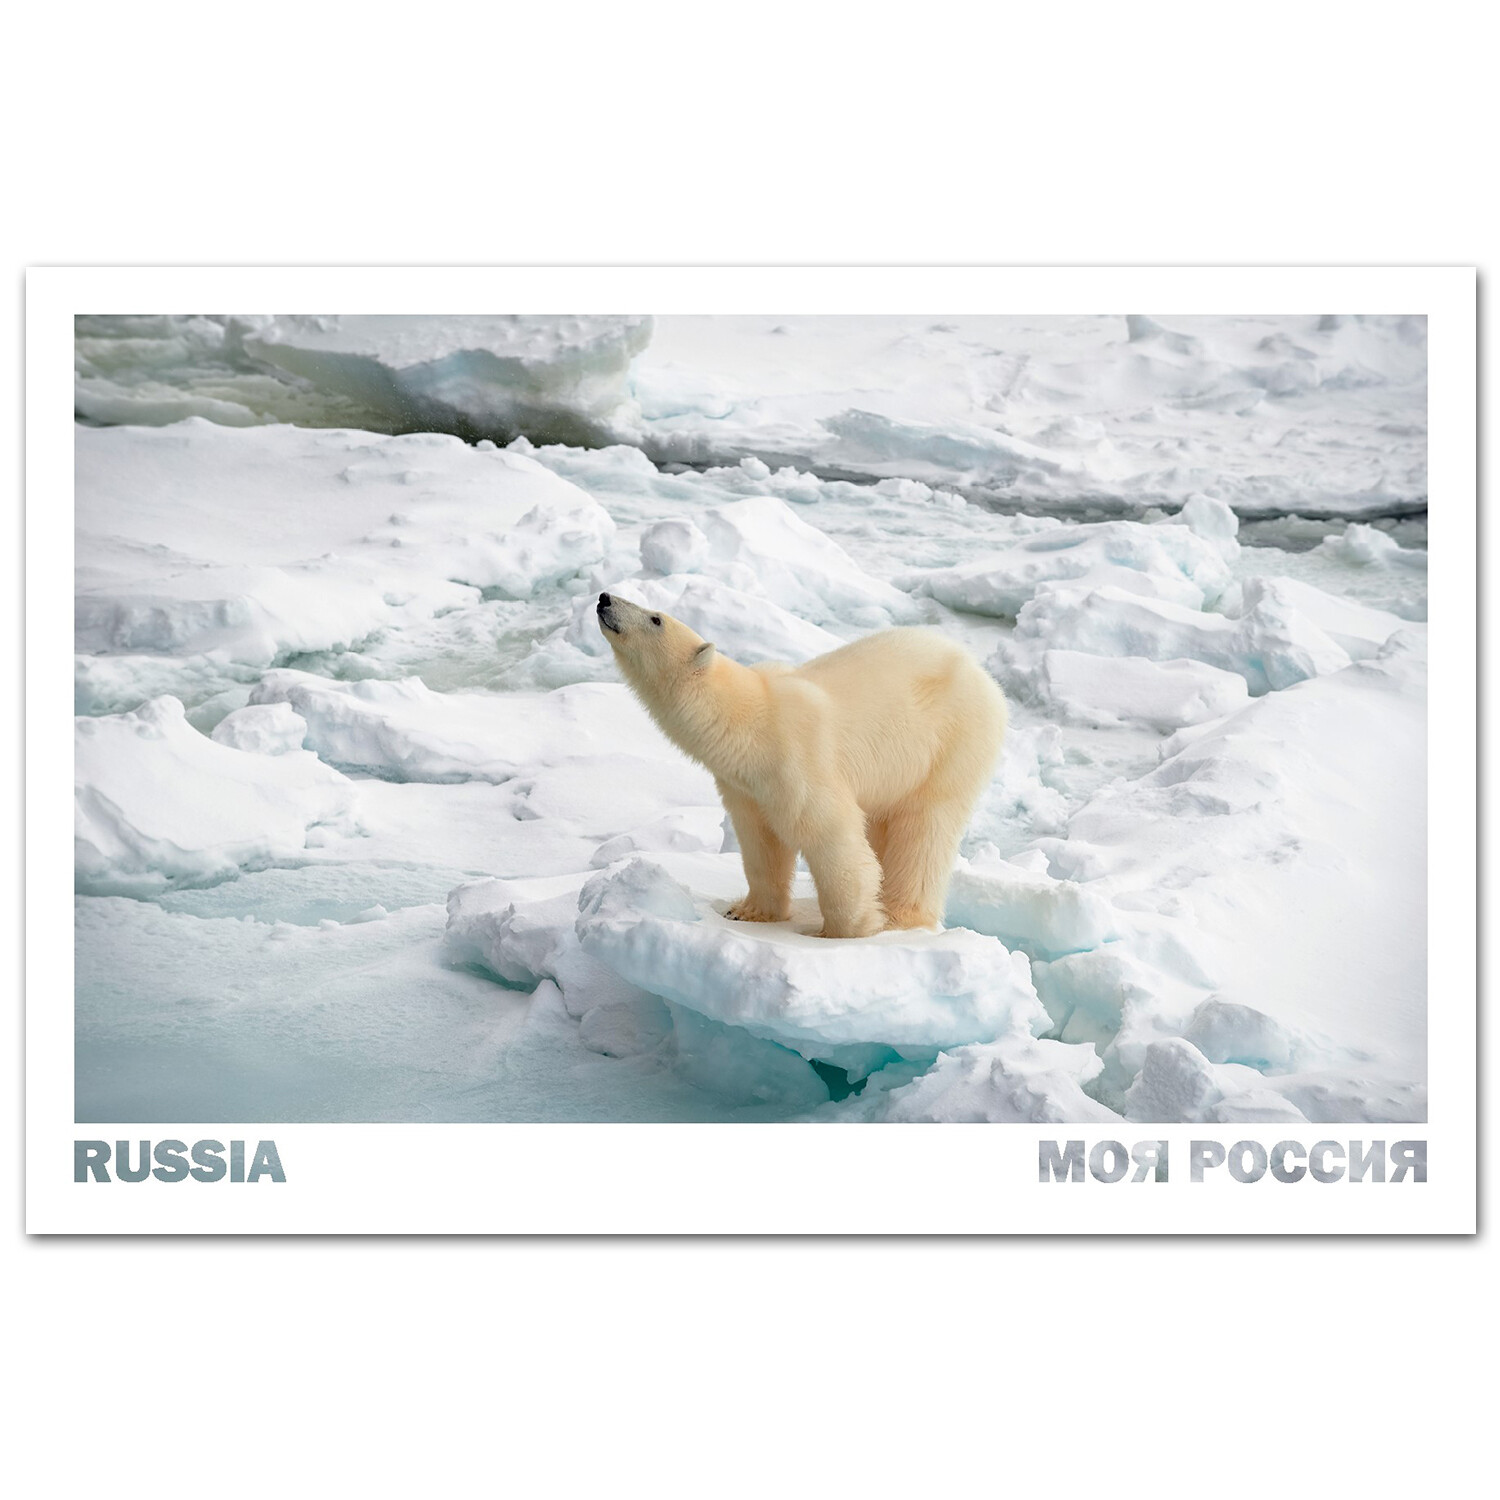 Белый медведь на Земле Александры. Земля Франца-Иосифа, Архангельская область